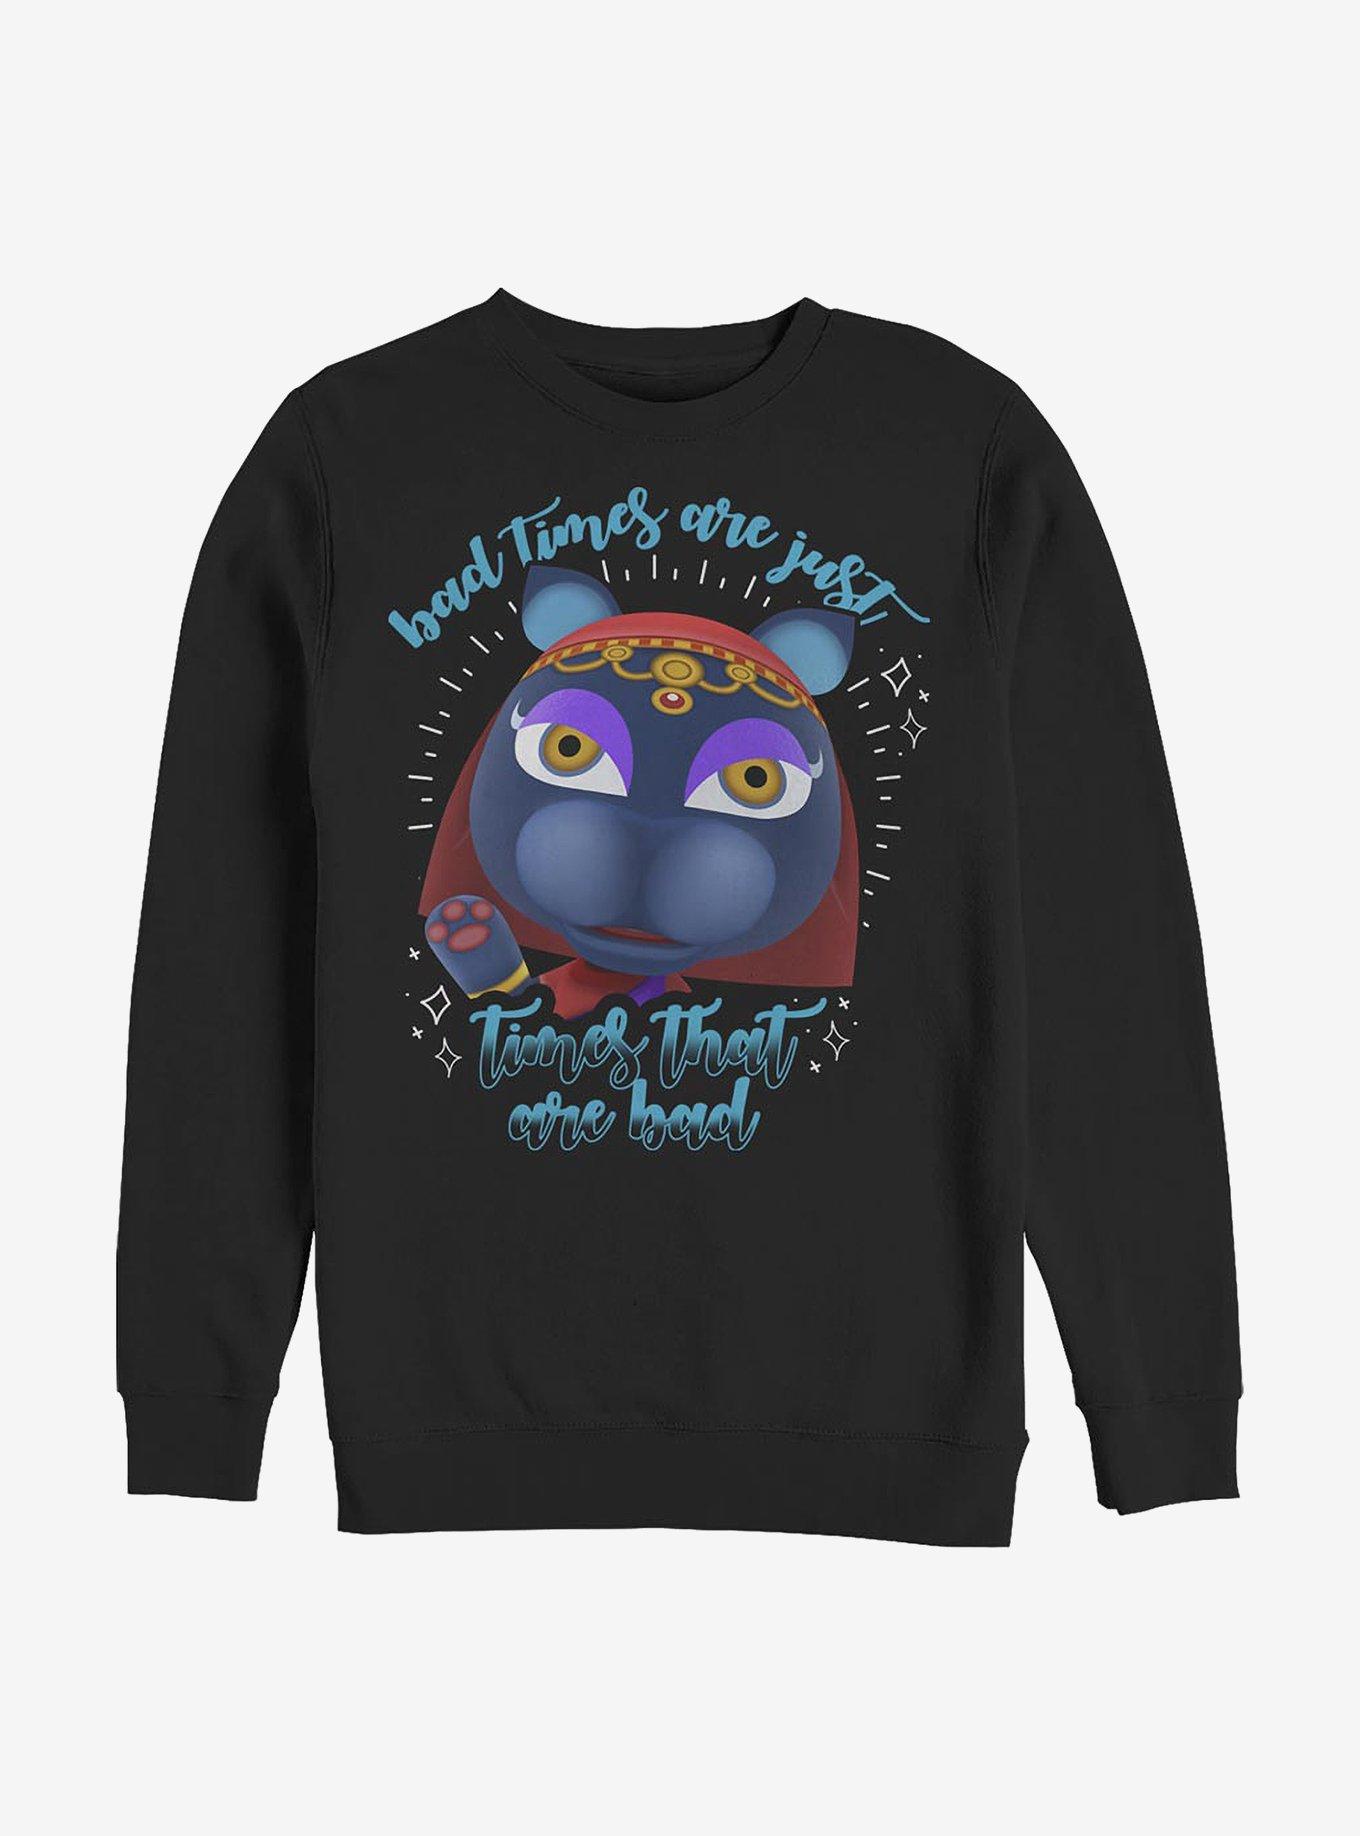 Nintendo Animal Crossing Bad Times Crew Sweatshirt